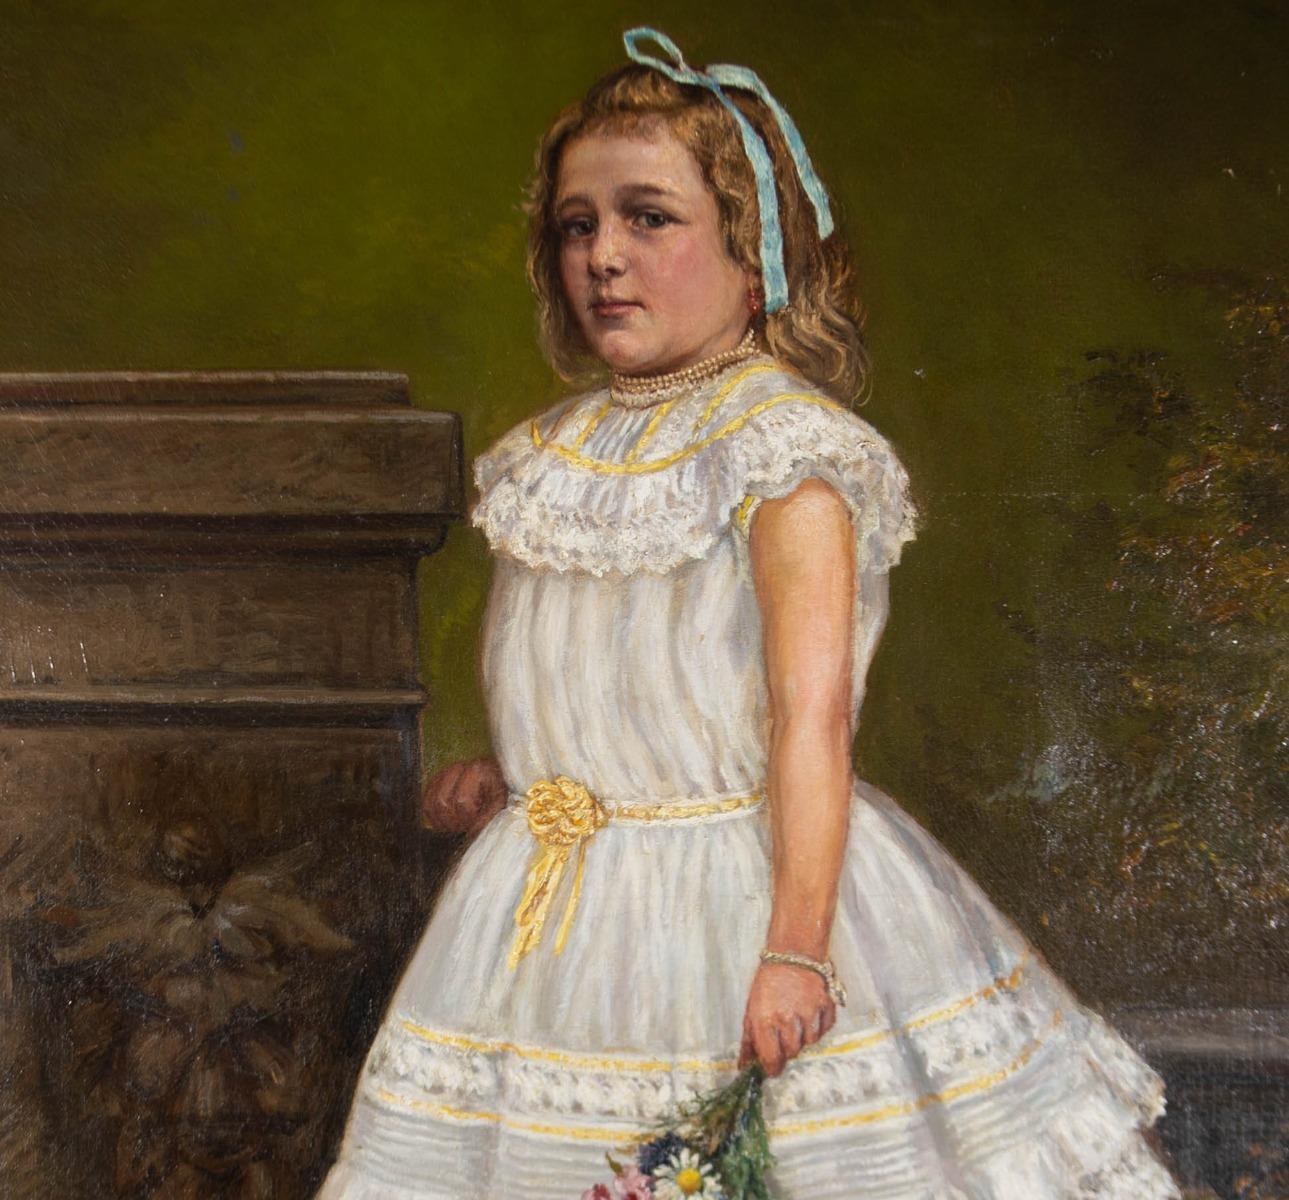 R. Sperber - 1902 Oil, The Party Dress 3